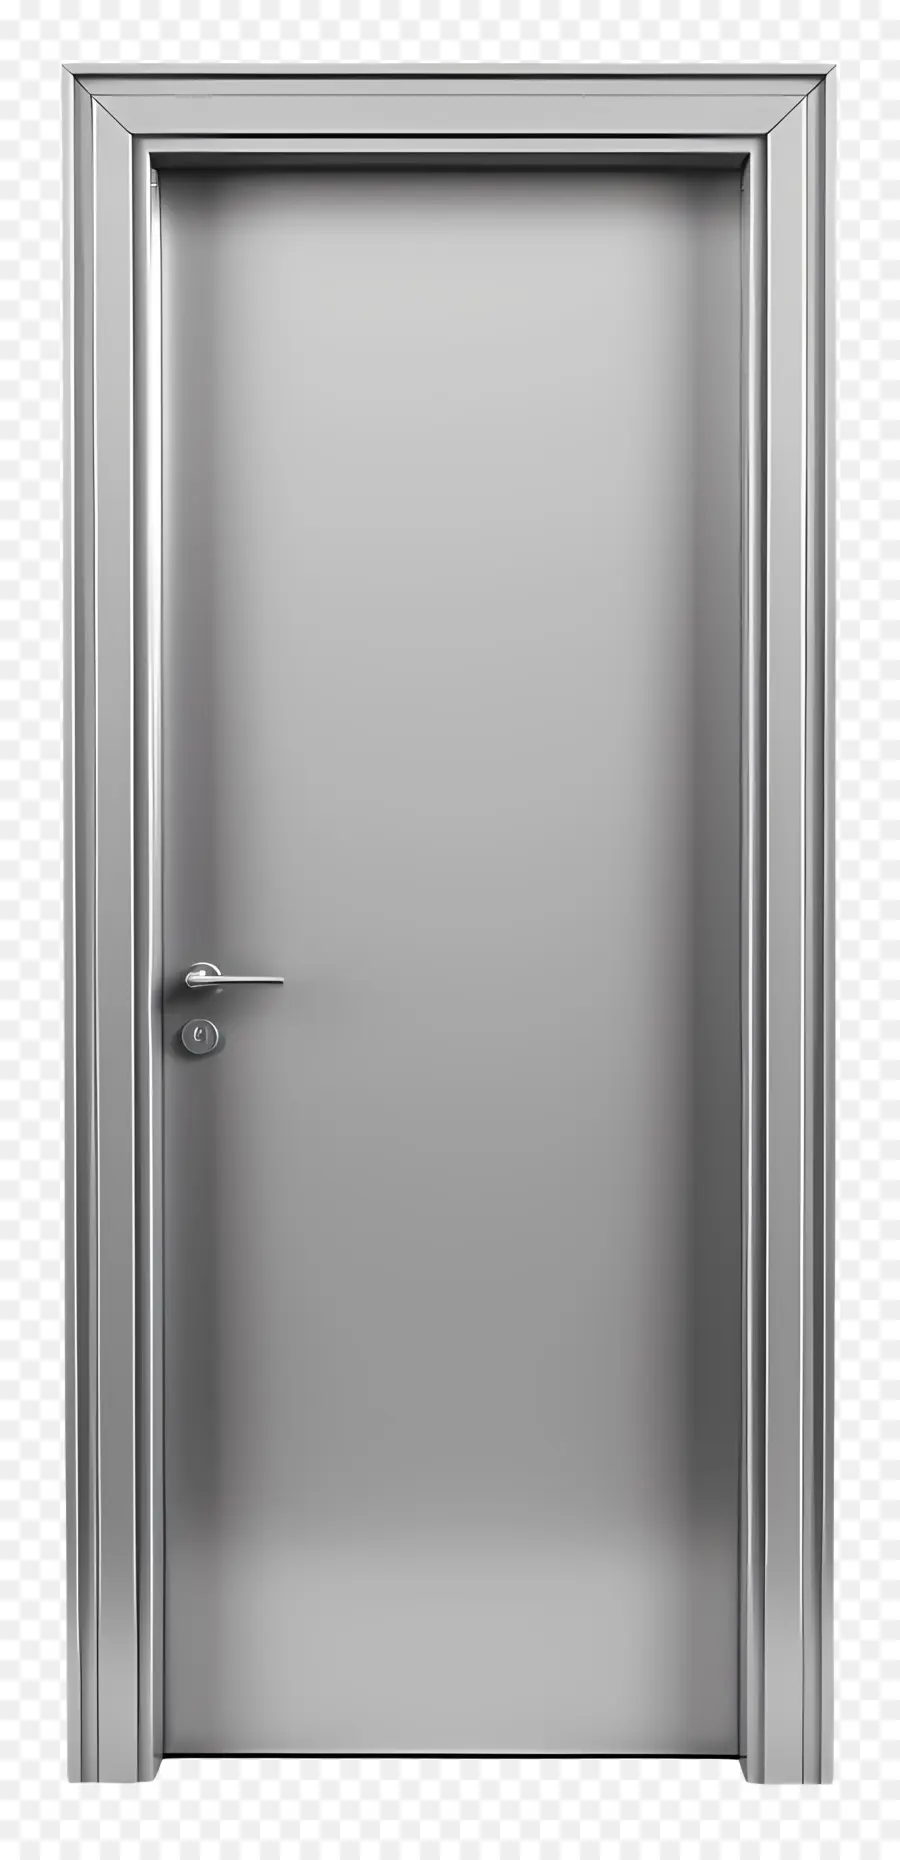 metal door frame steel door matte finish symmetrical design hinges